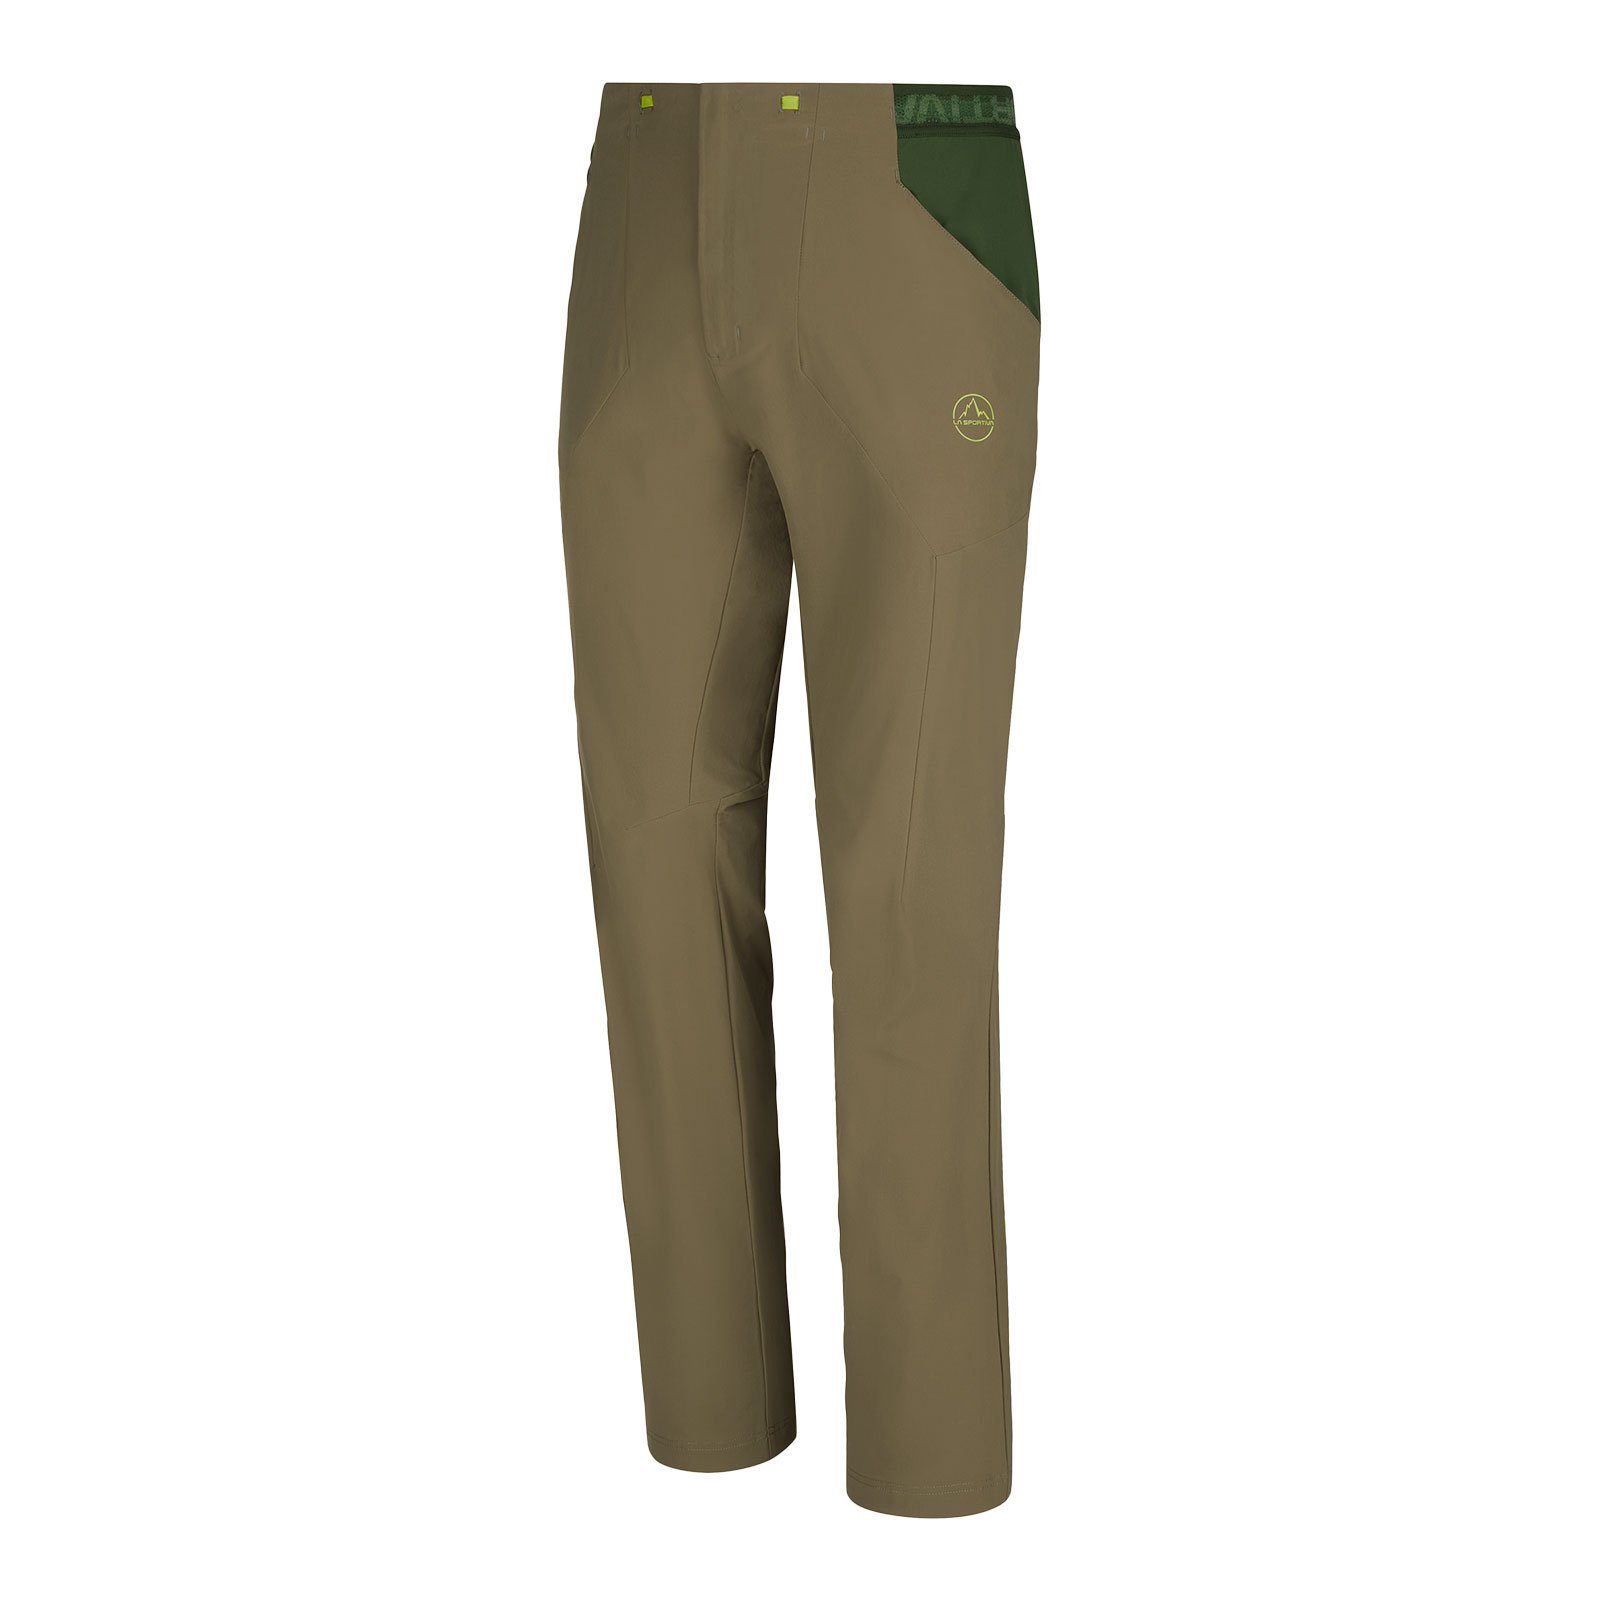 La Sportiva Trekkinghose Brush Pant aus besonders leichtem, elastischem und atmungsaktivem Material 731711 turtle / forest